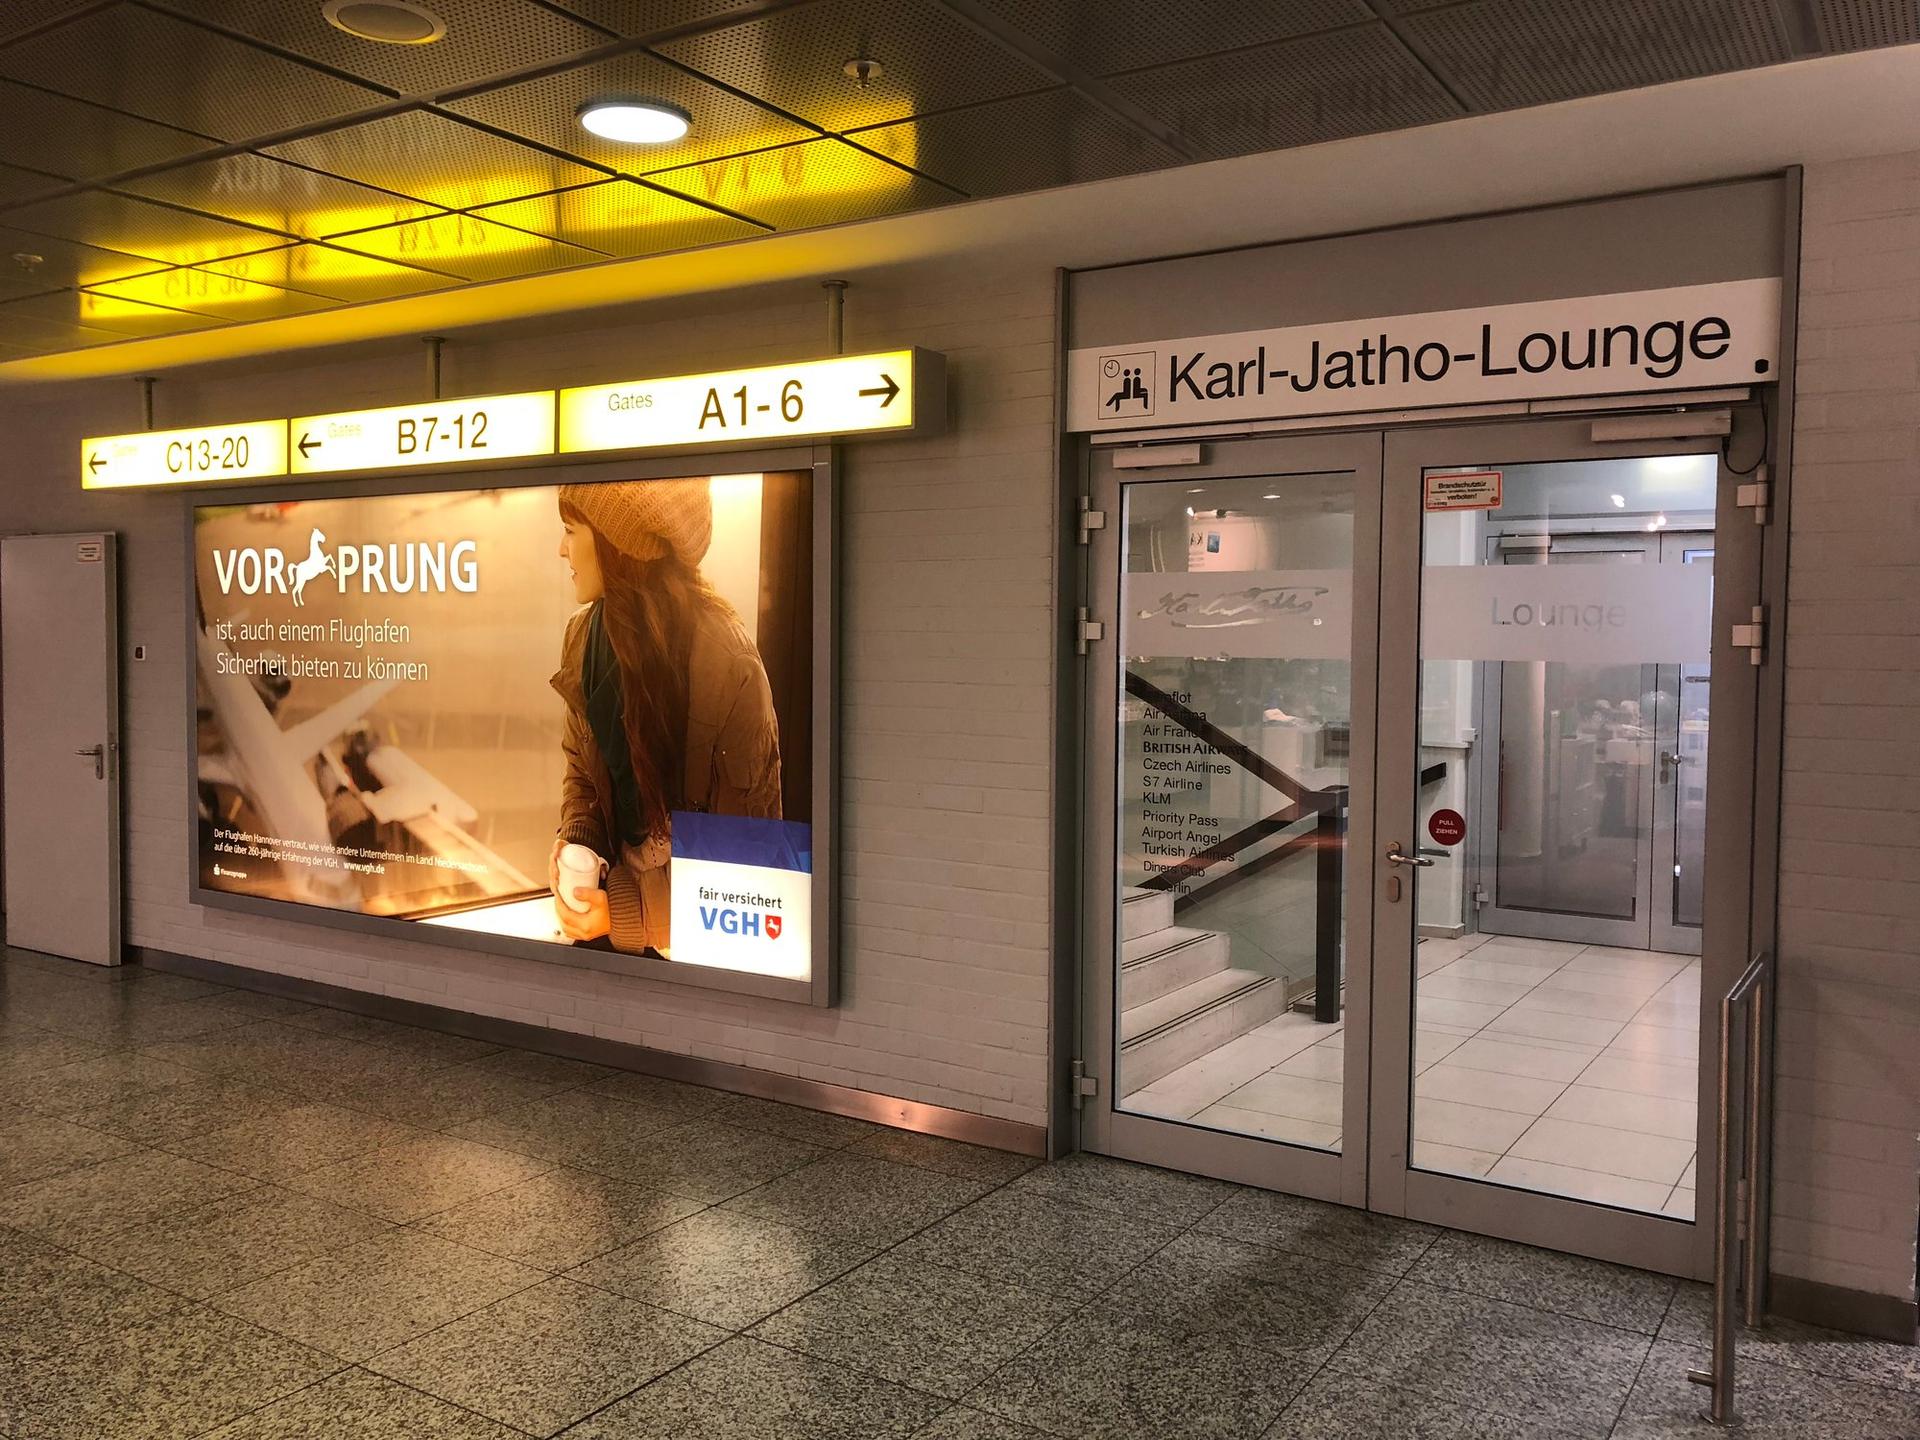 Karl-Jatho Lounge image 2 of 9